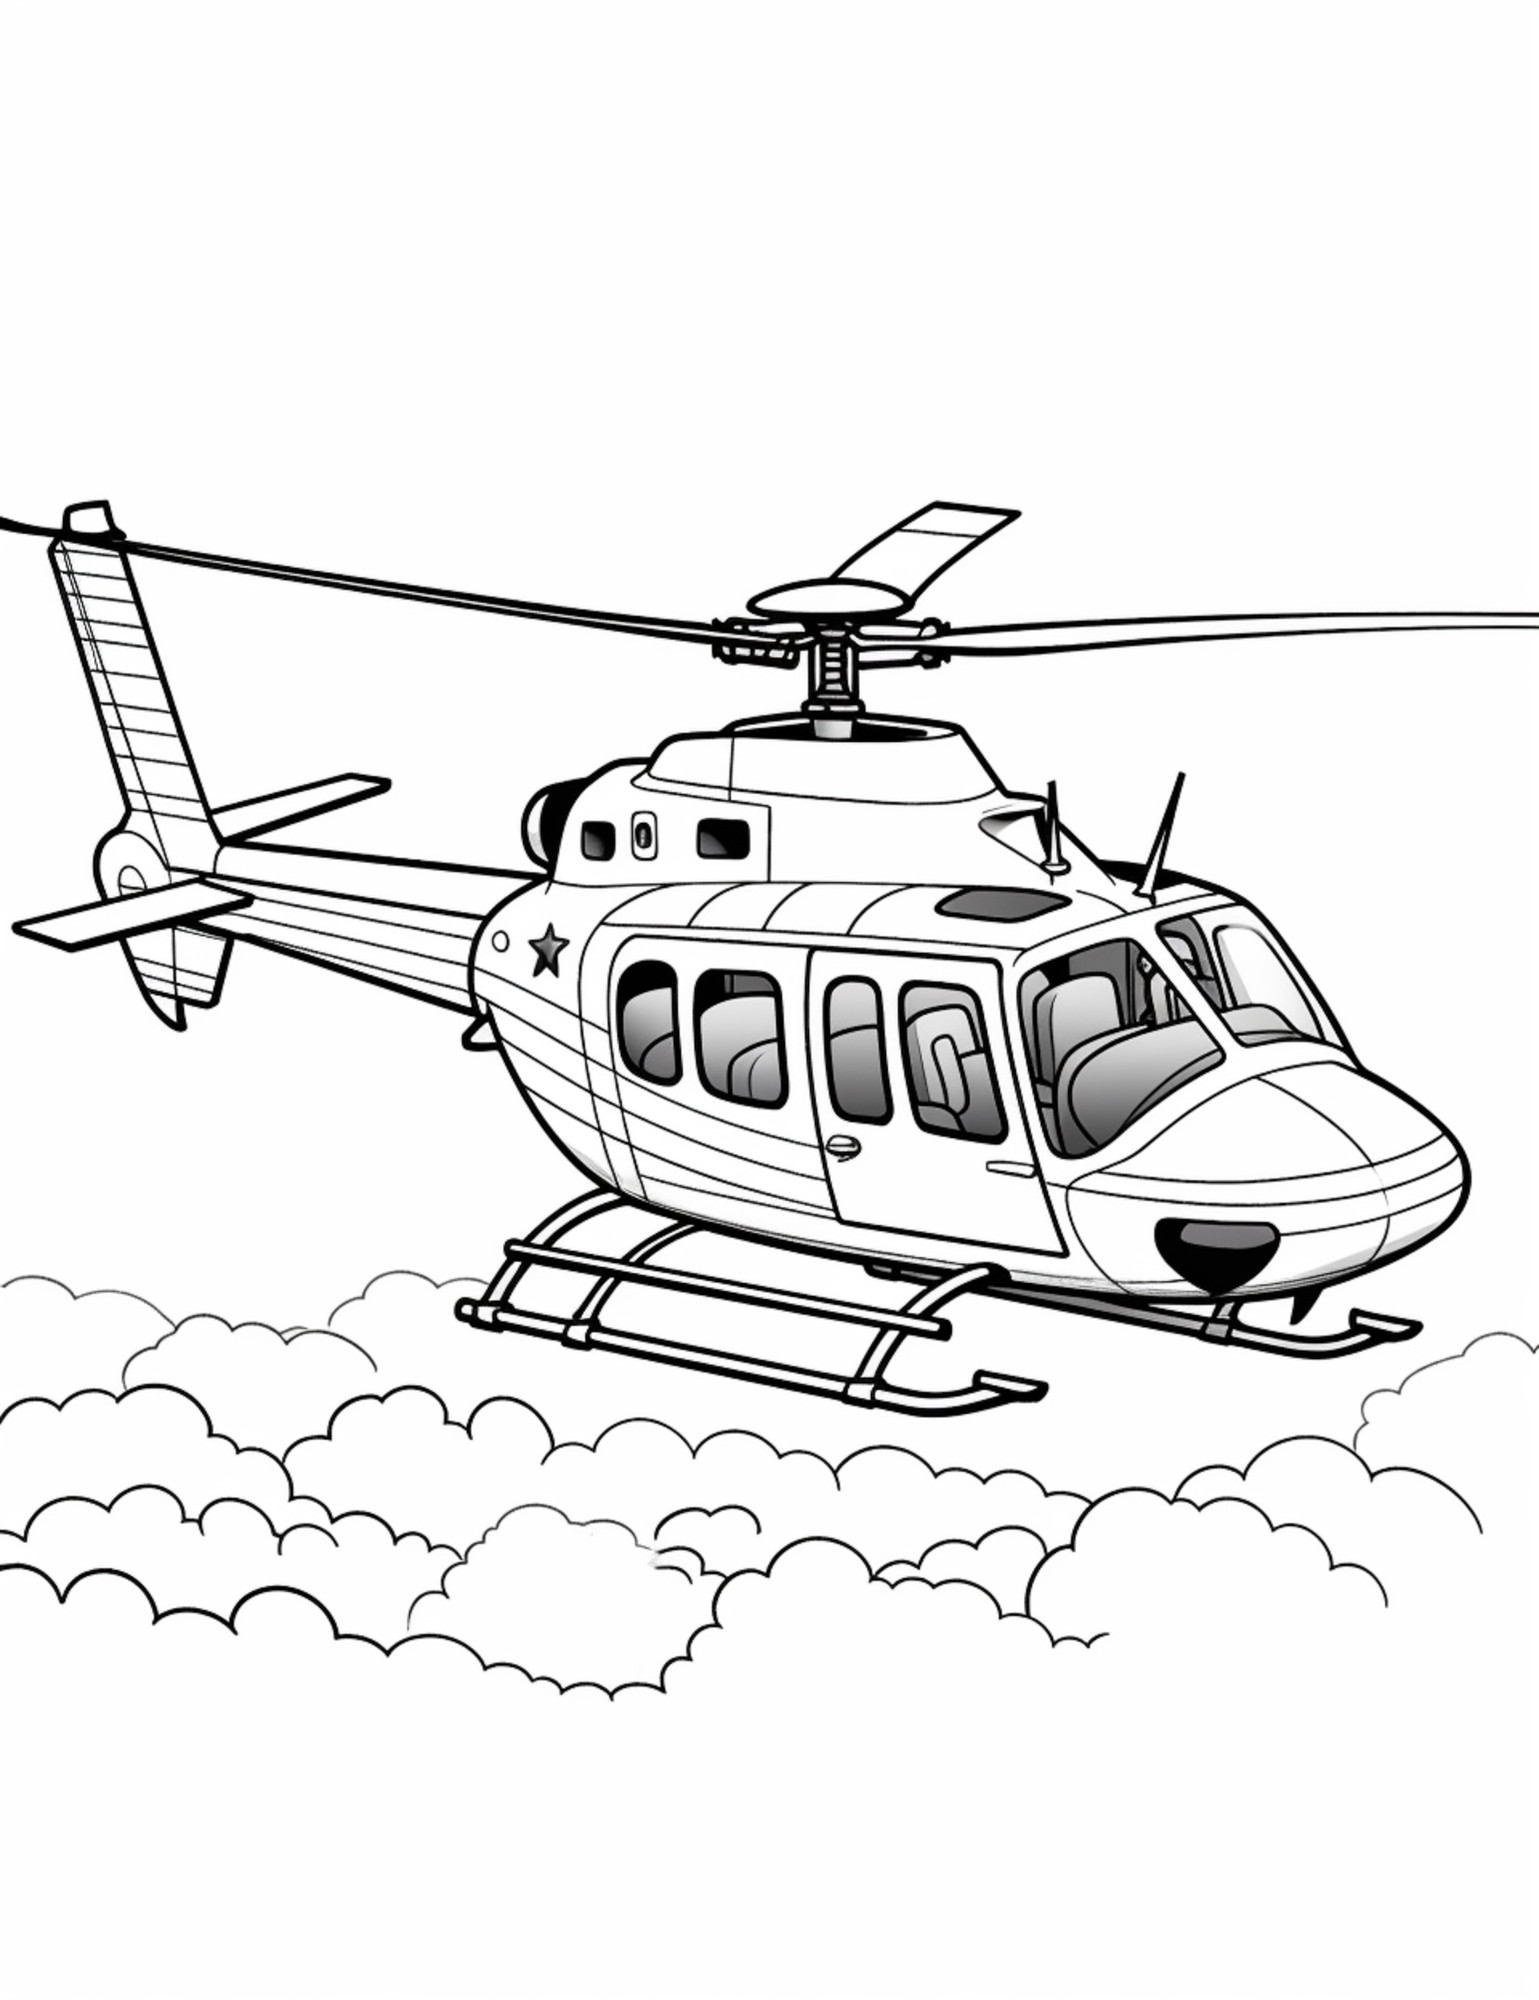 Раскраска для детей: вертолет «Ворон» в облаках